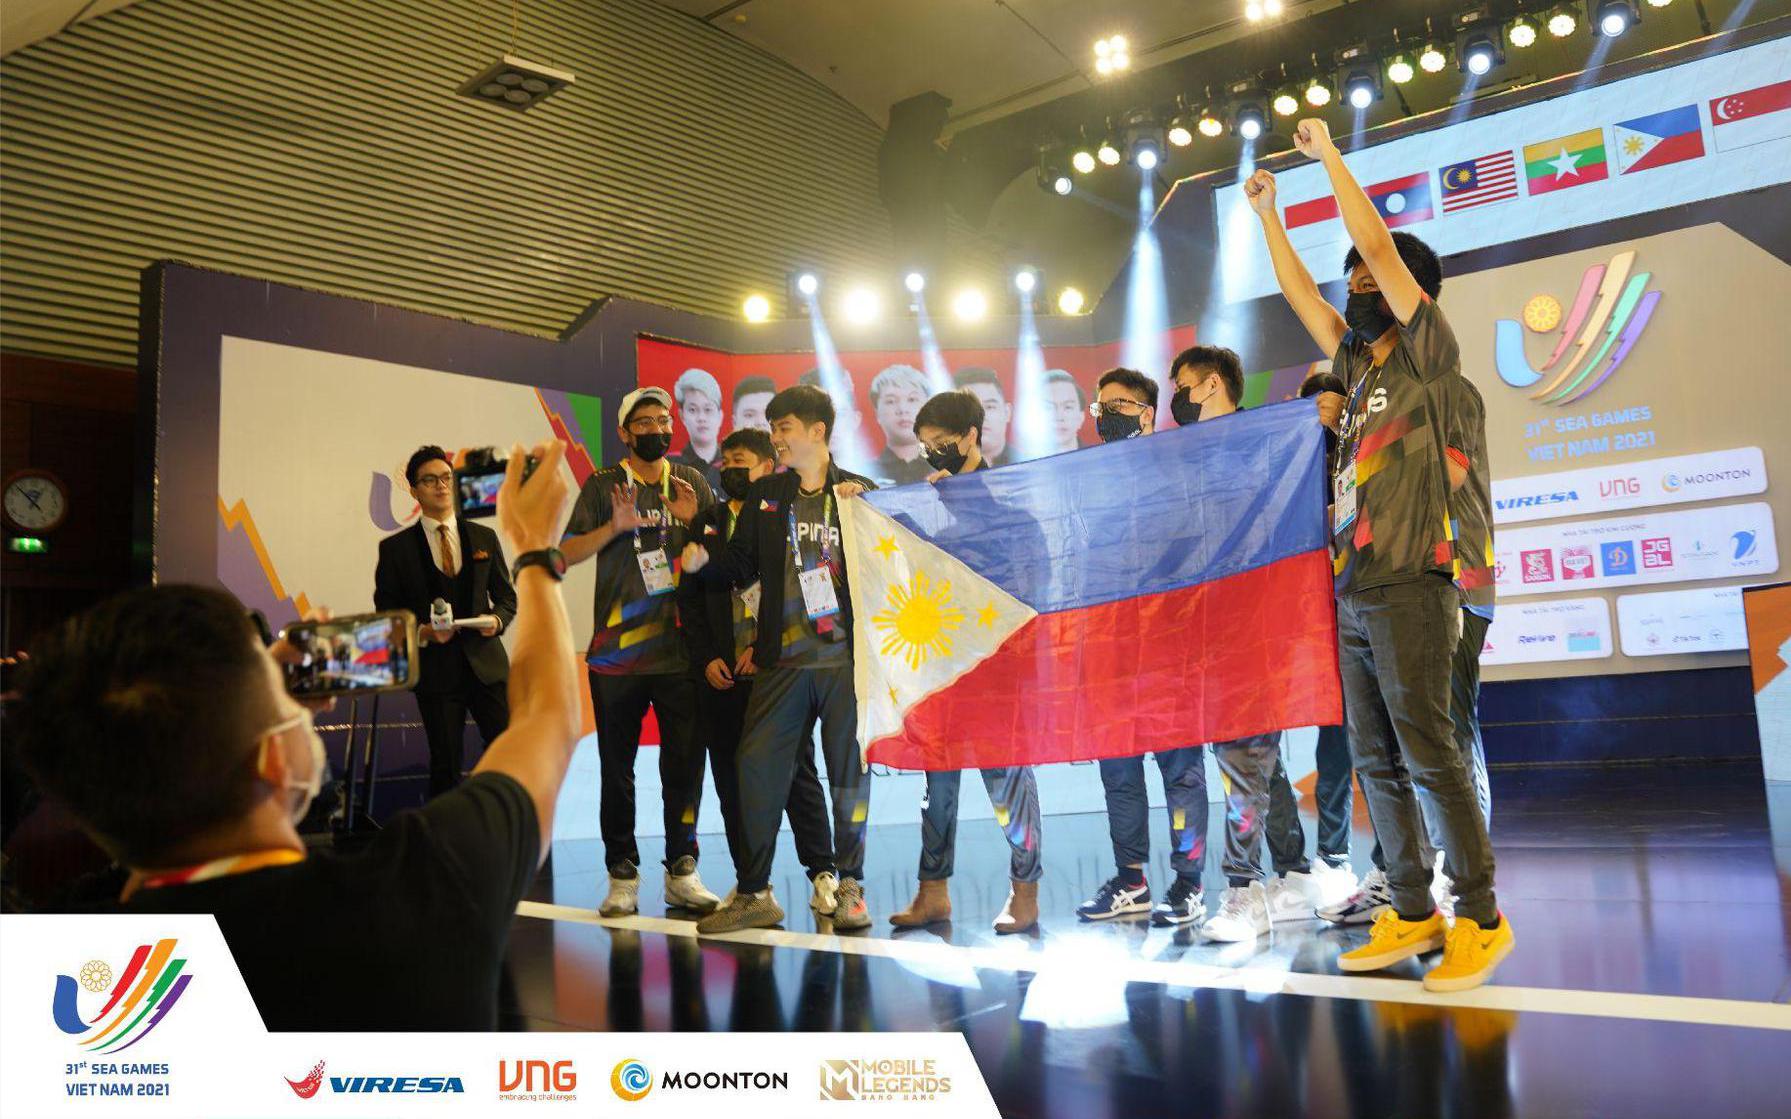 Ngày thi đấu cuối bộ môn Mobile Legends: Bang Bang tại SEA Games 31: Đội tuyển Philippines giành huy chương vàng